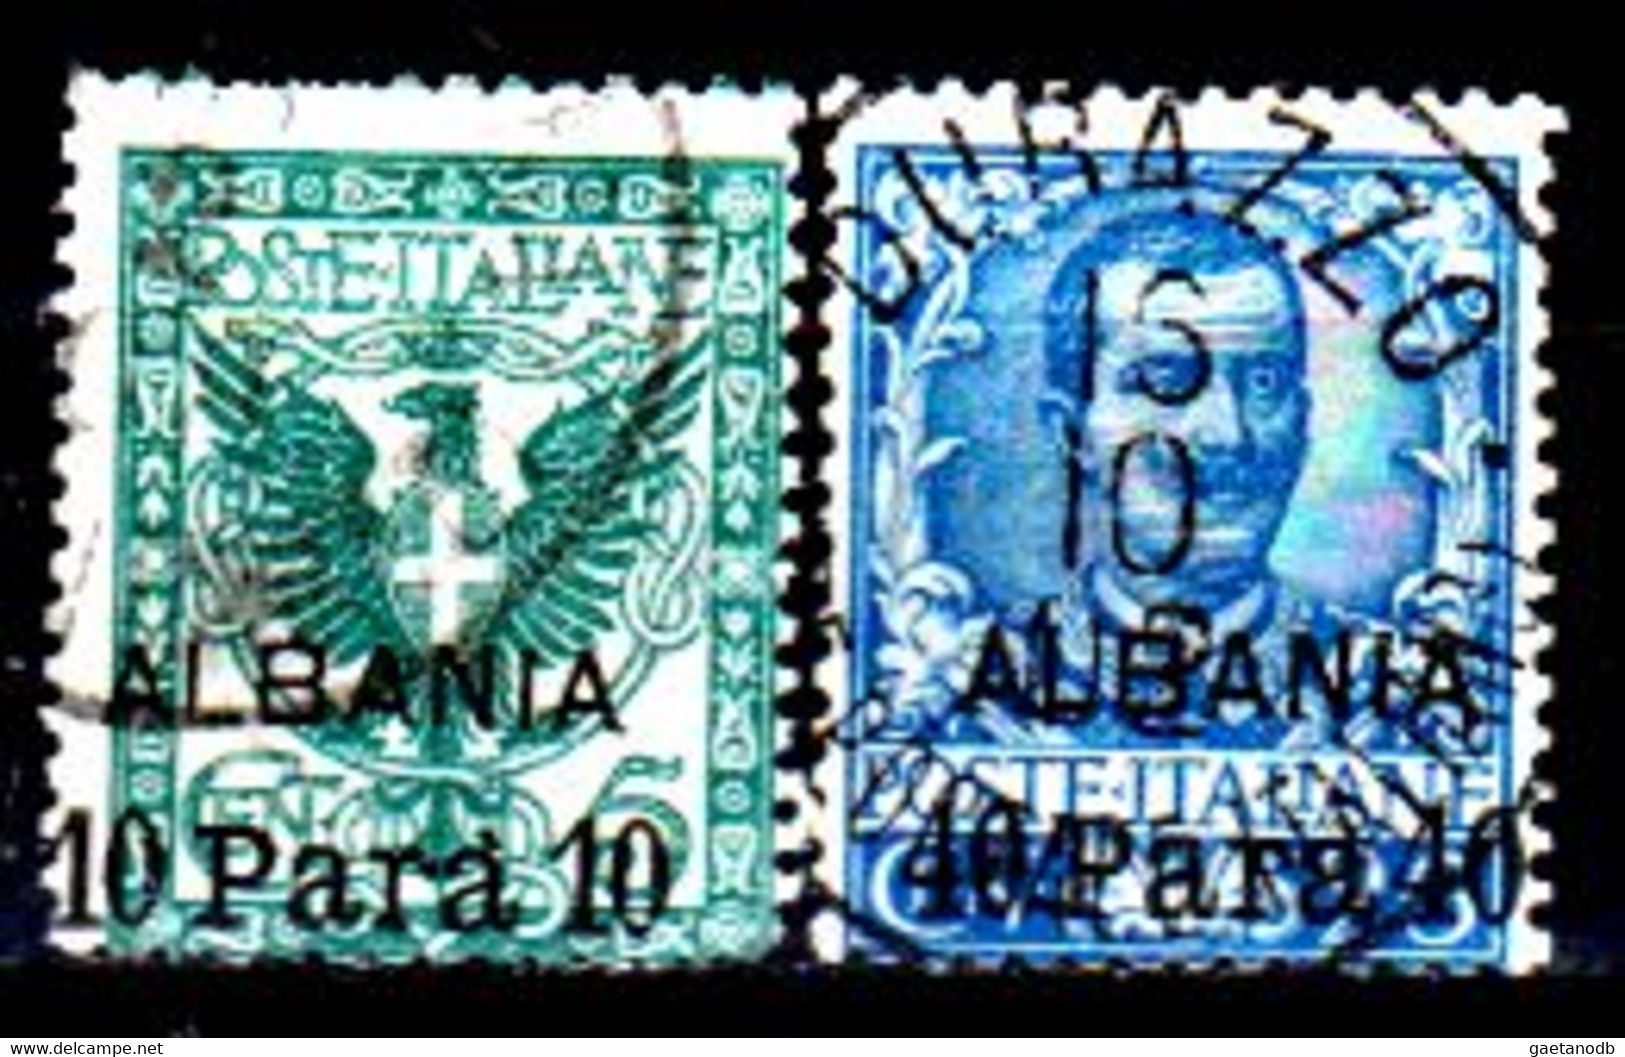 Italia-G-1027 - Albania 1902: Sassone, N. 1, 3 (o) Used - Qualità A Vostro Giudizio. - Albania